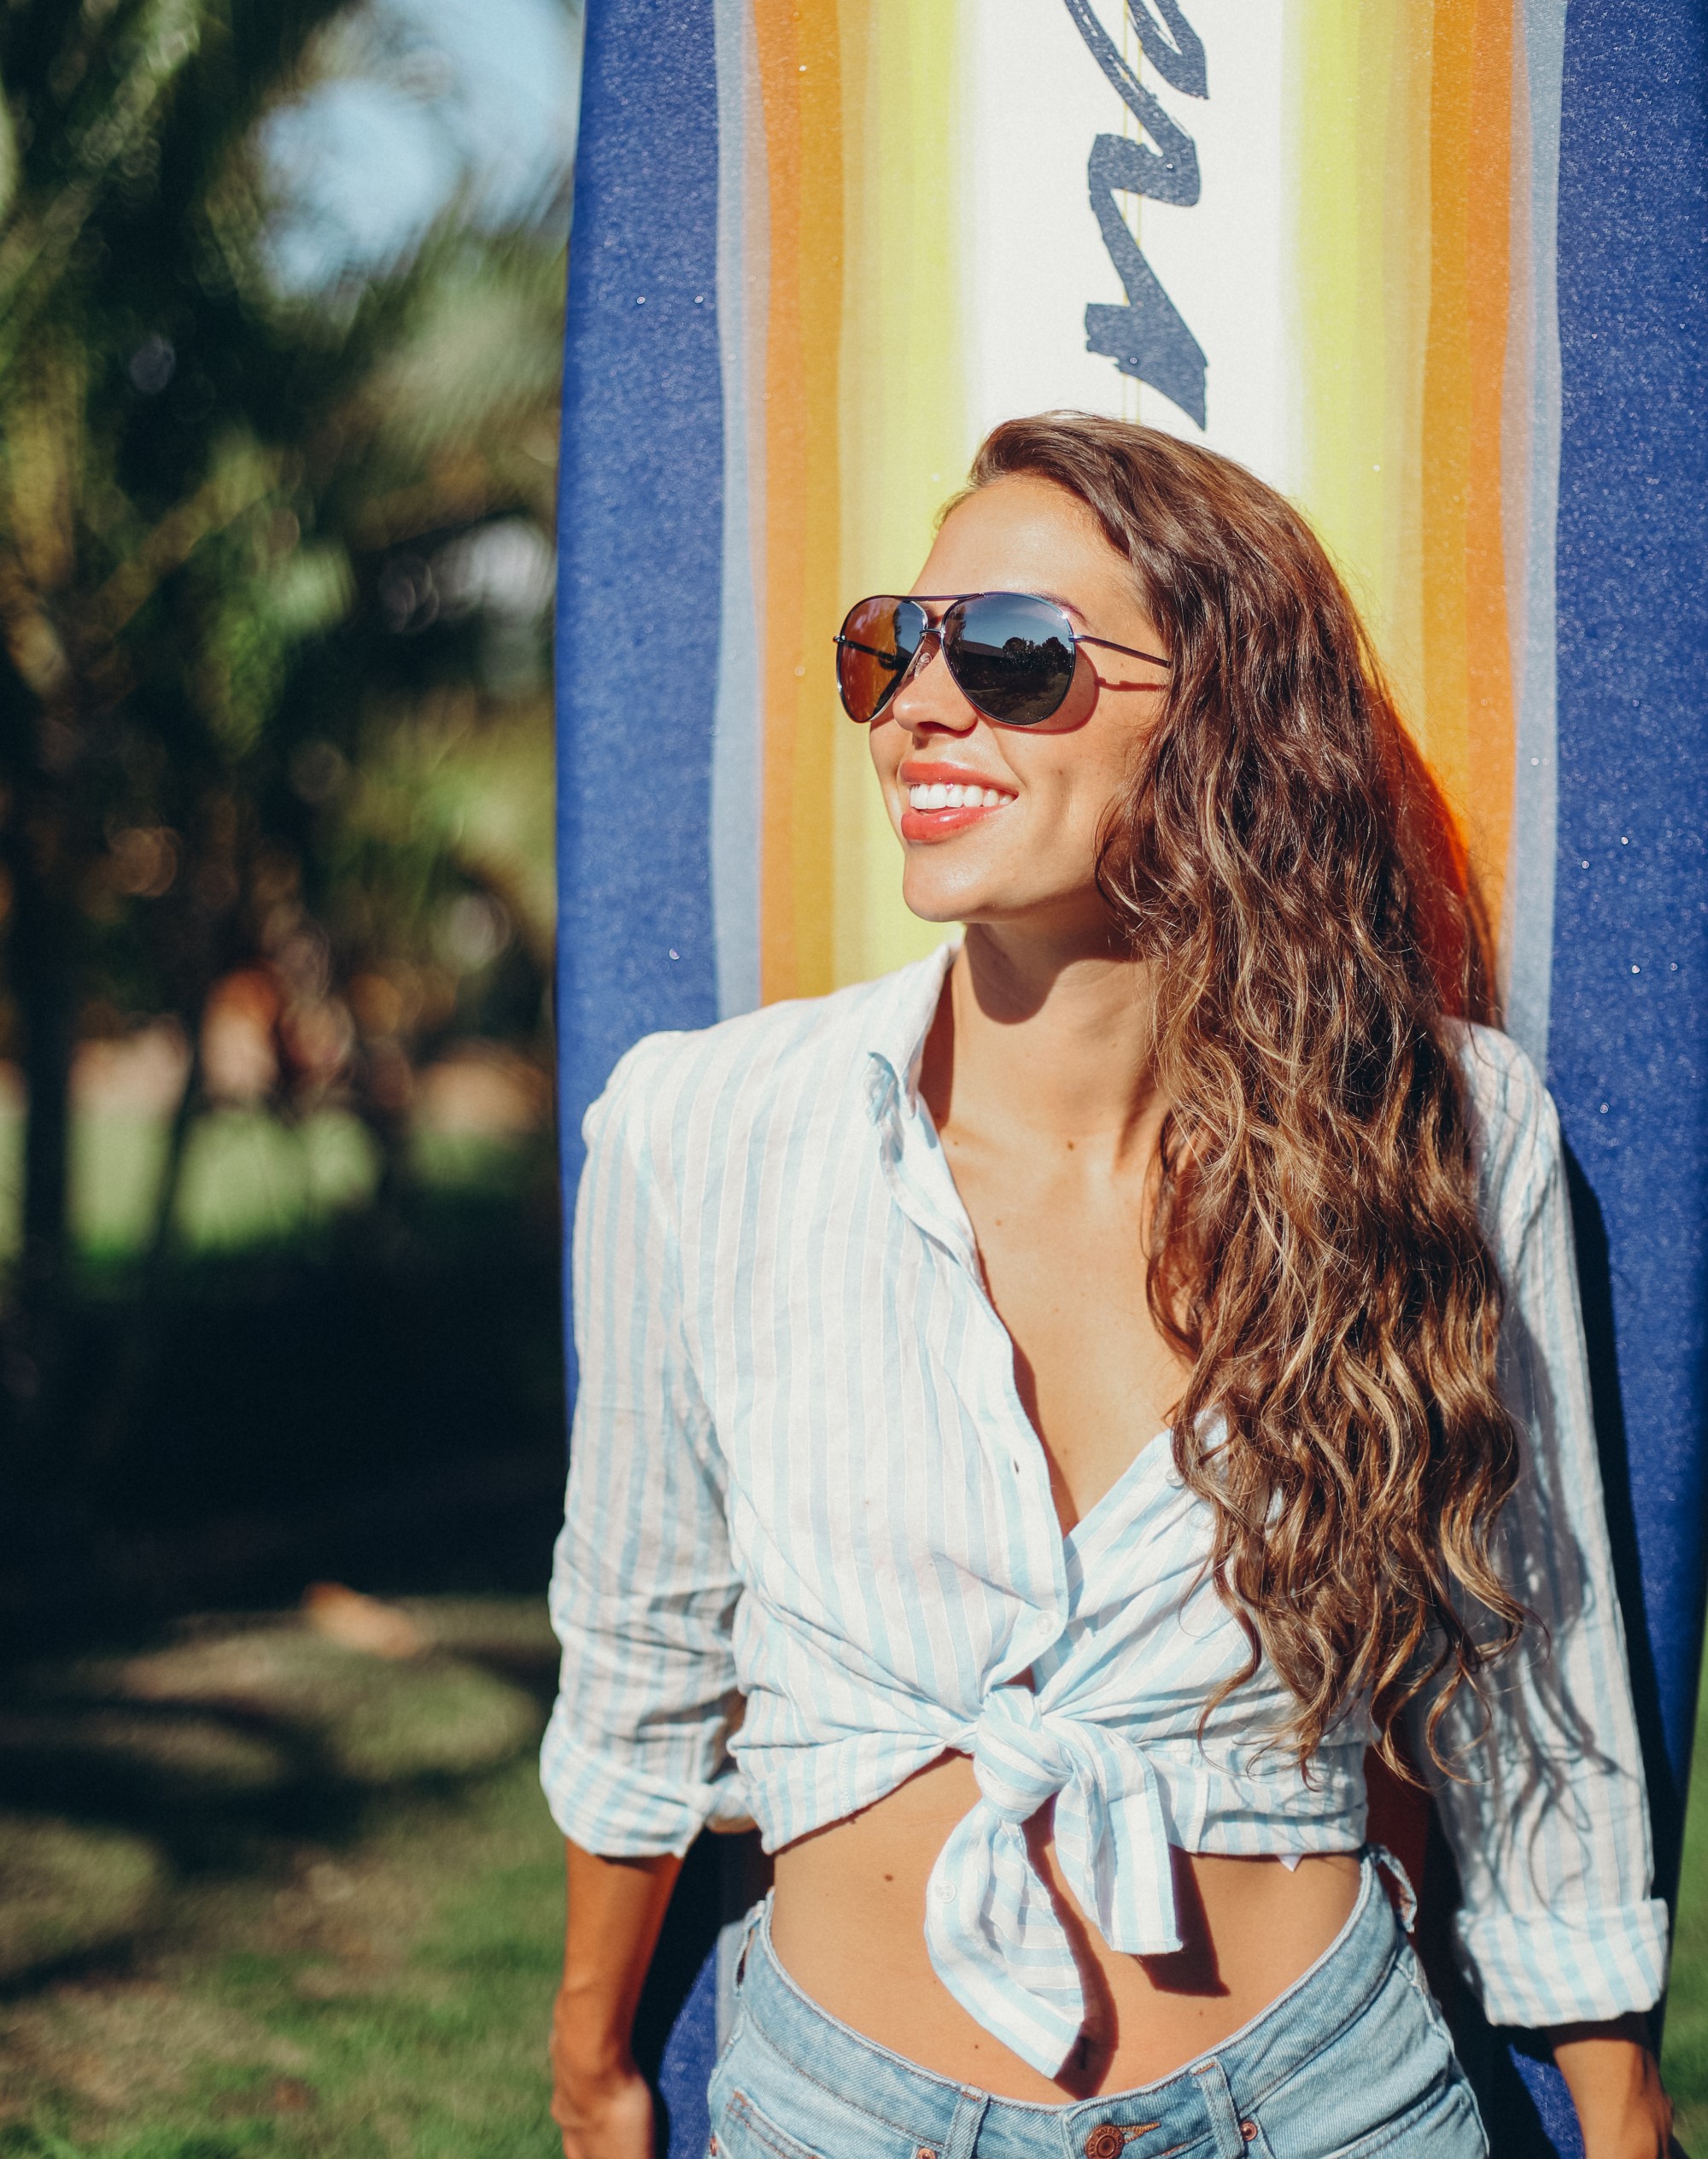 del-sol-surfboard-solize-sunglasses-sunscreen